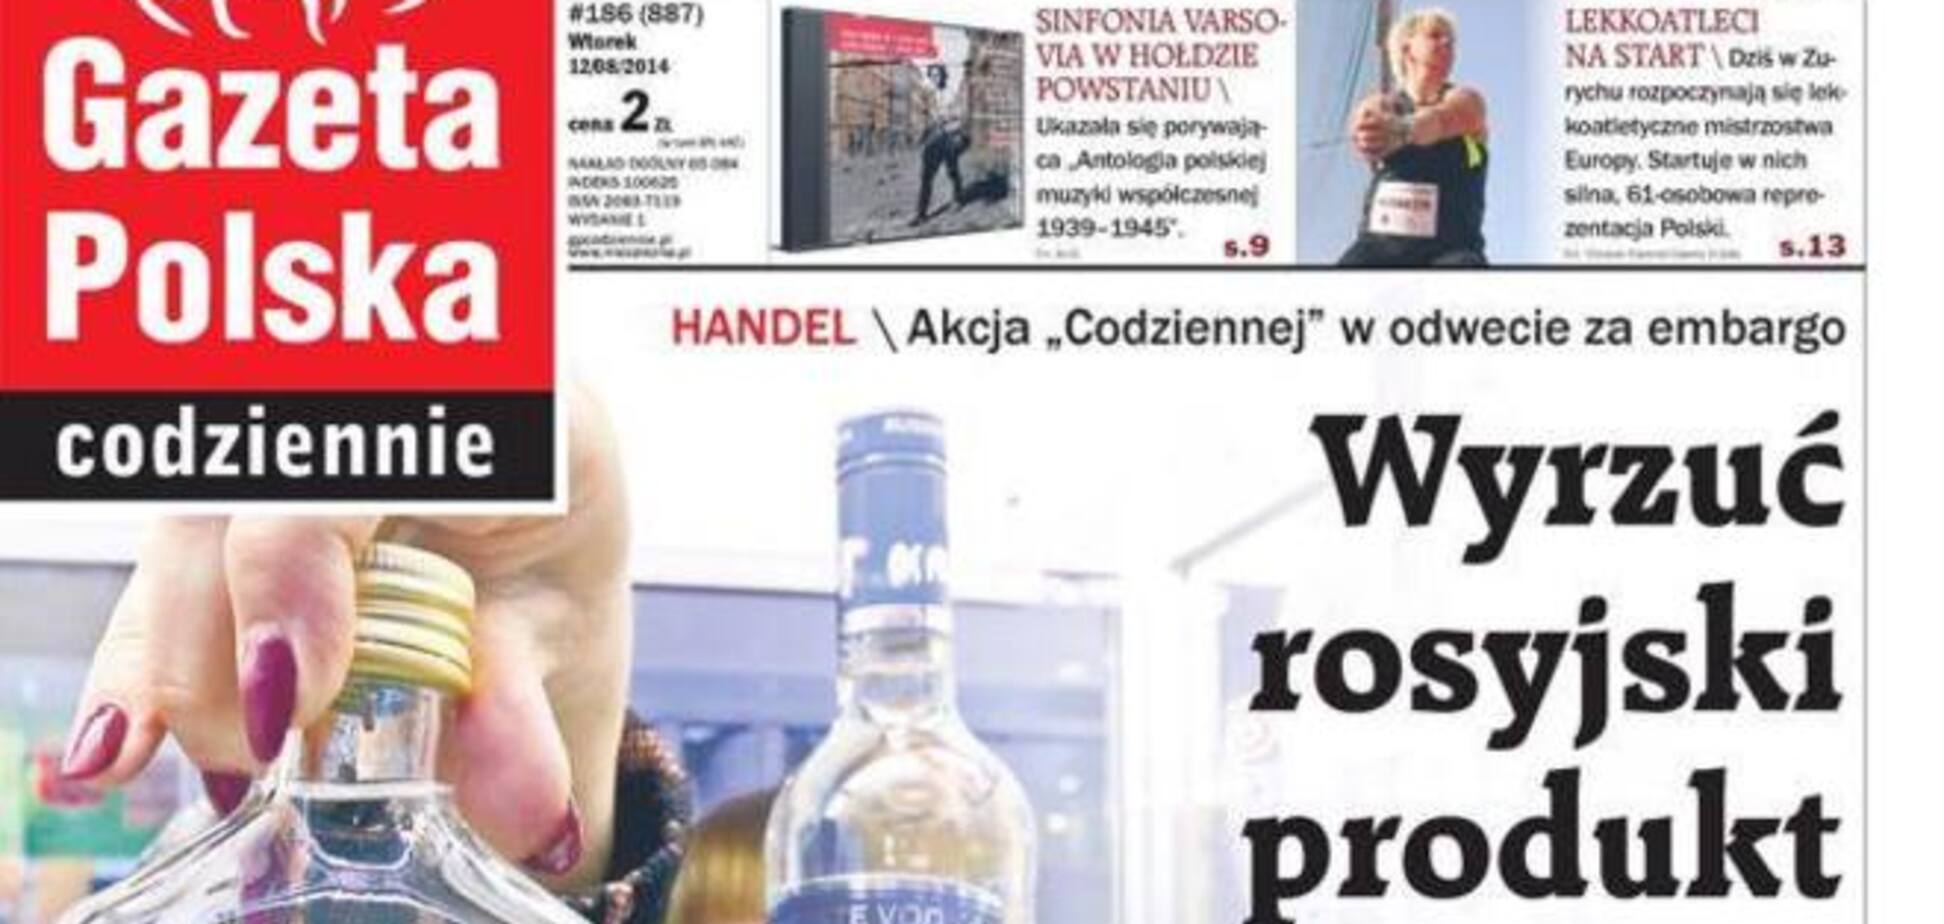 Польская газета инициировала акцию 'Выбрось из своей корзины российский продукт'